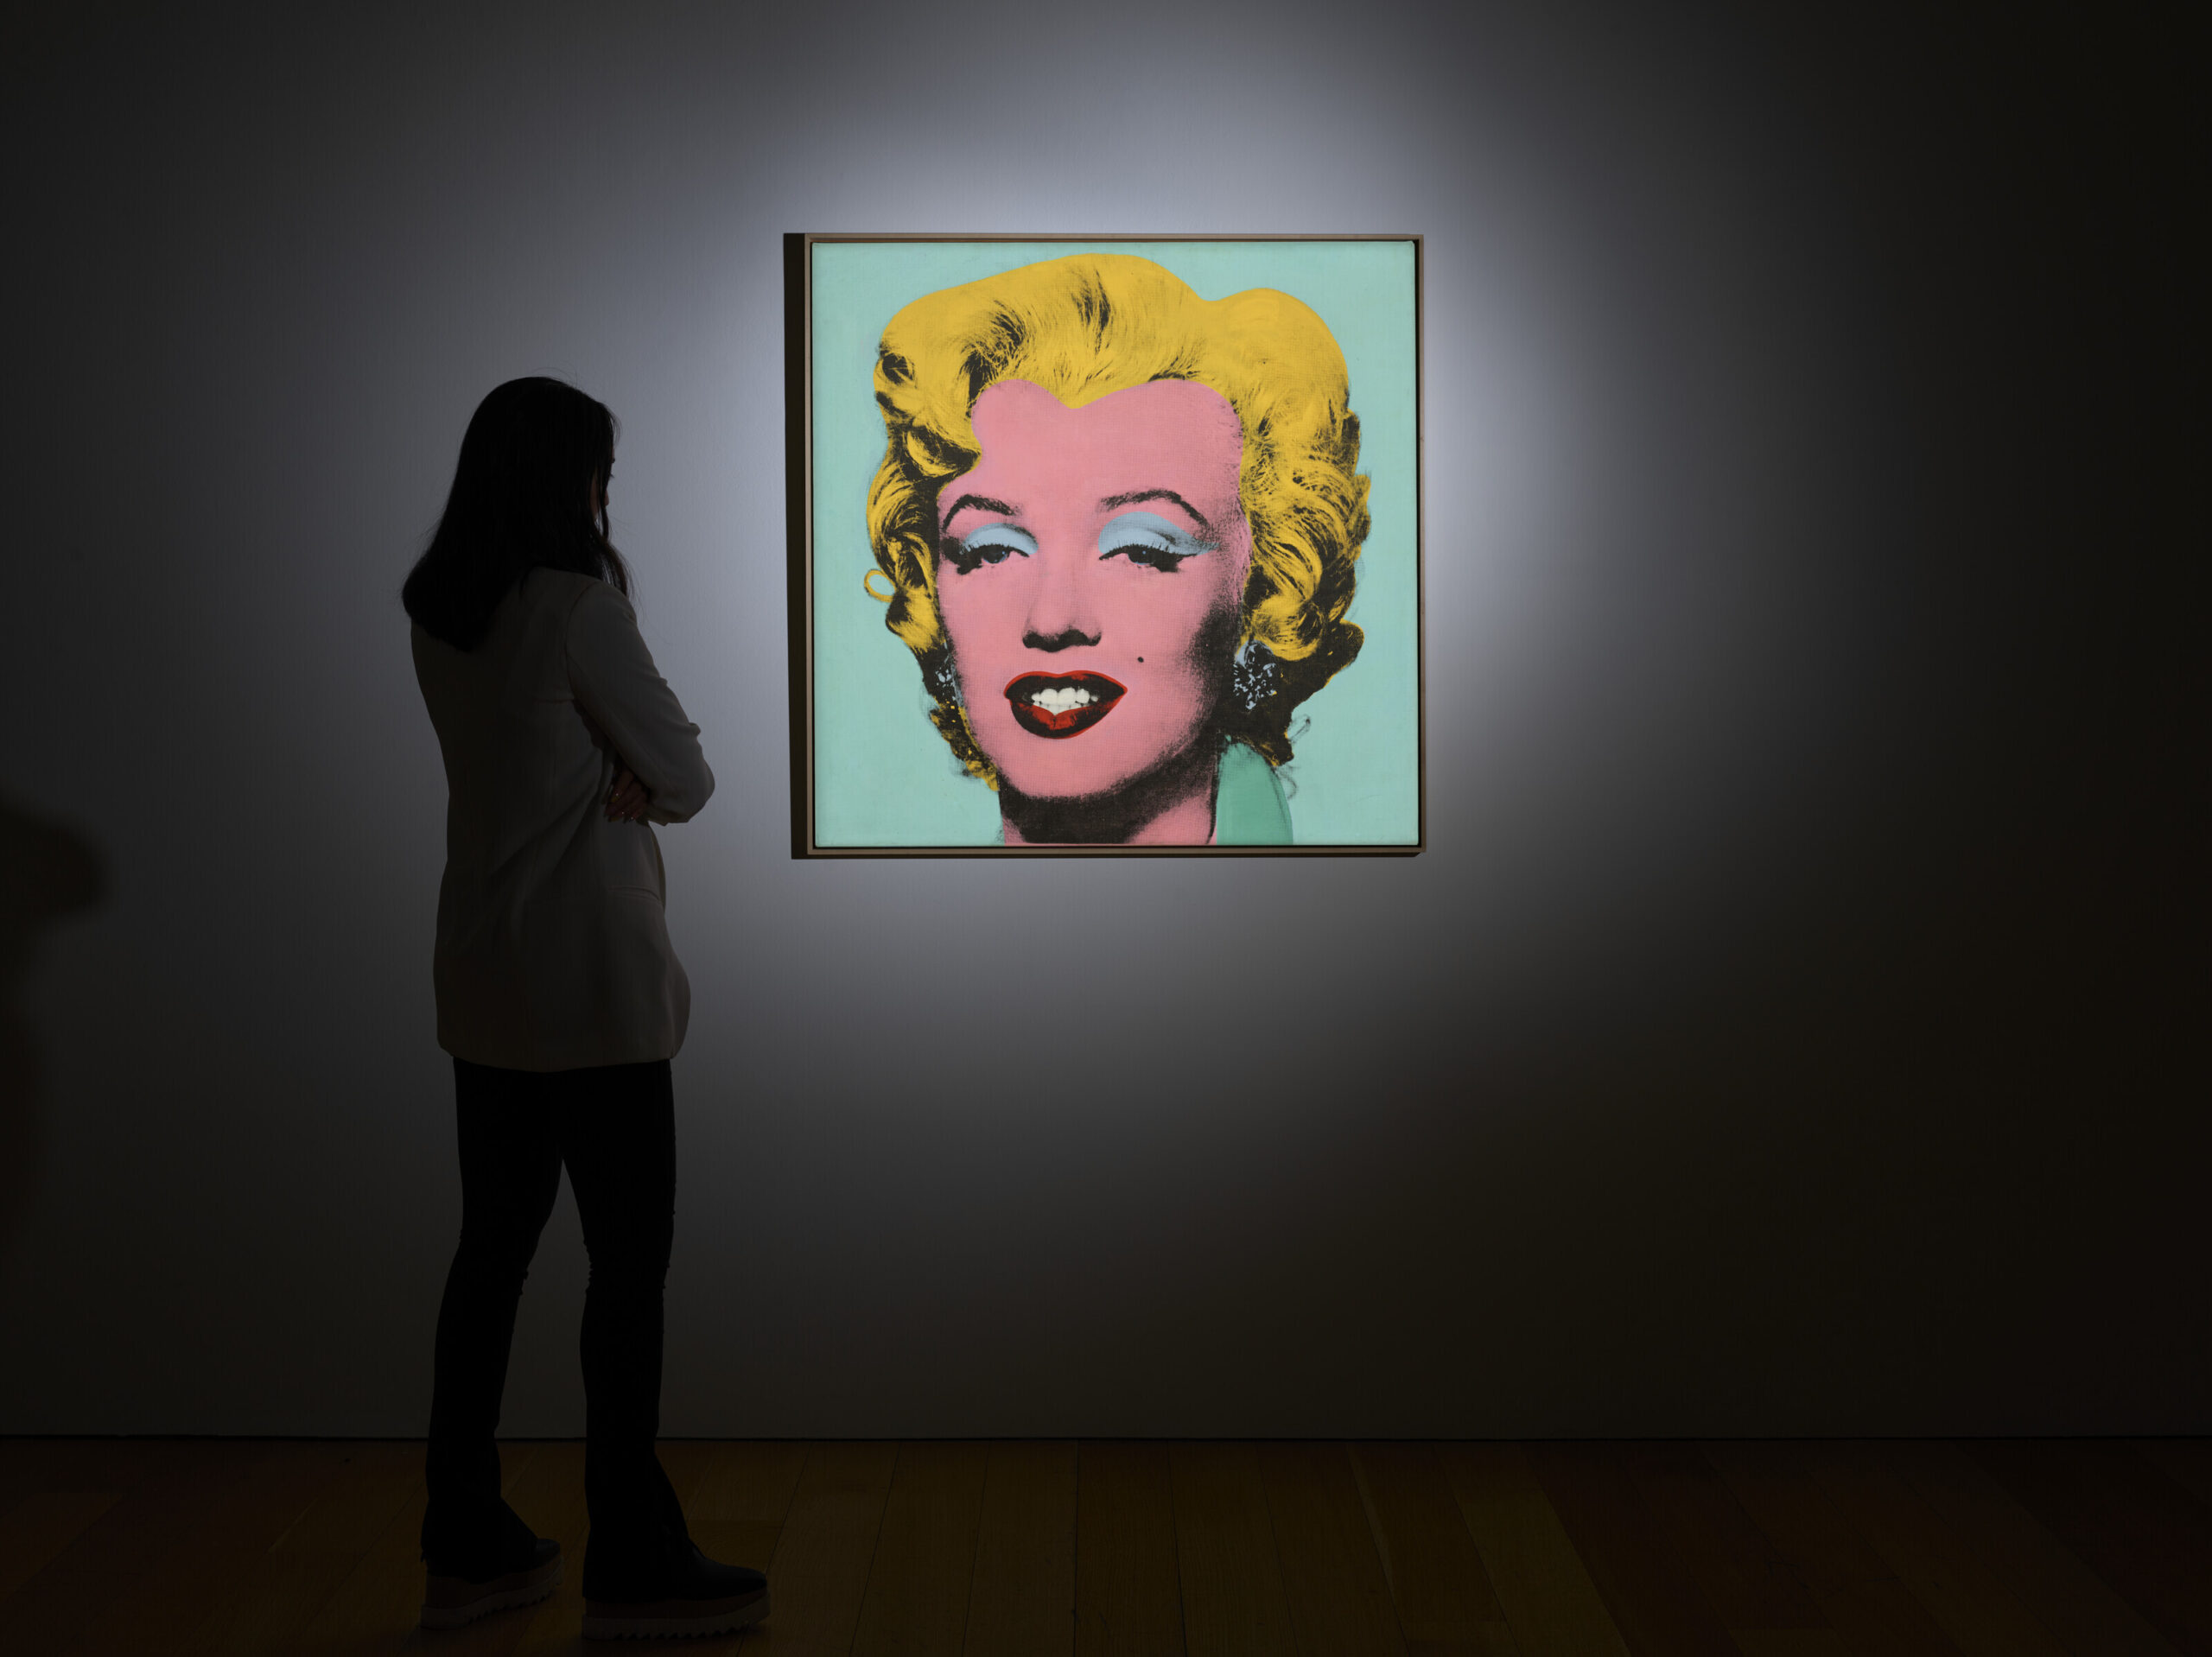 Портрет Мэрилин Монро работы Уорхола продали за $195 млн